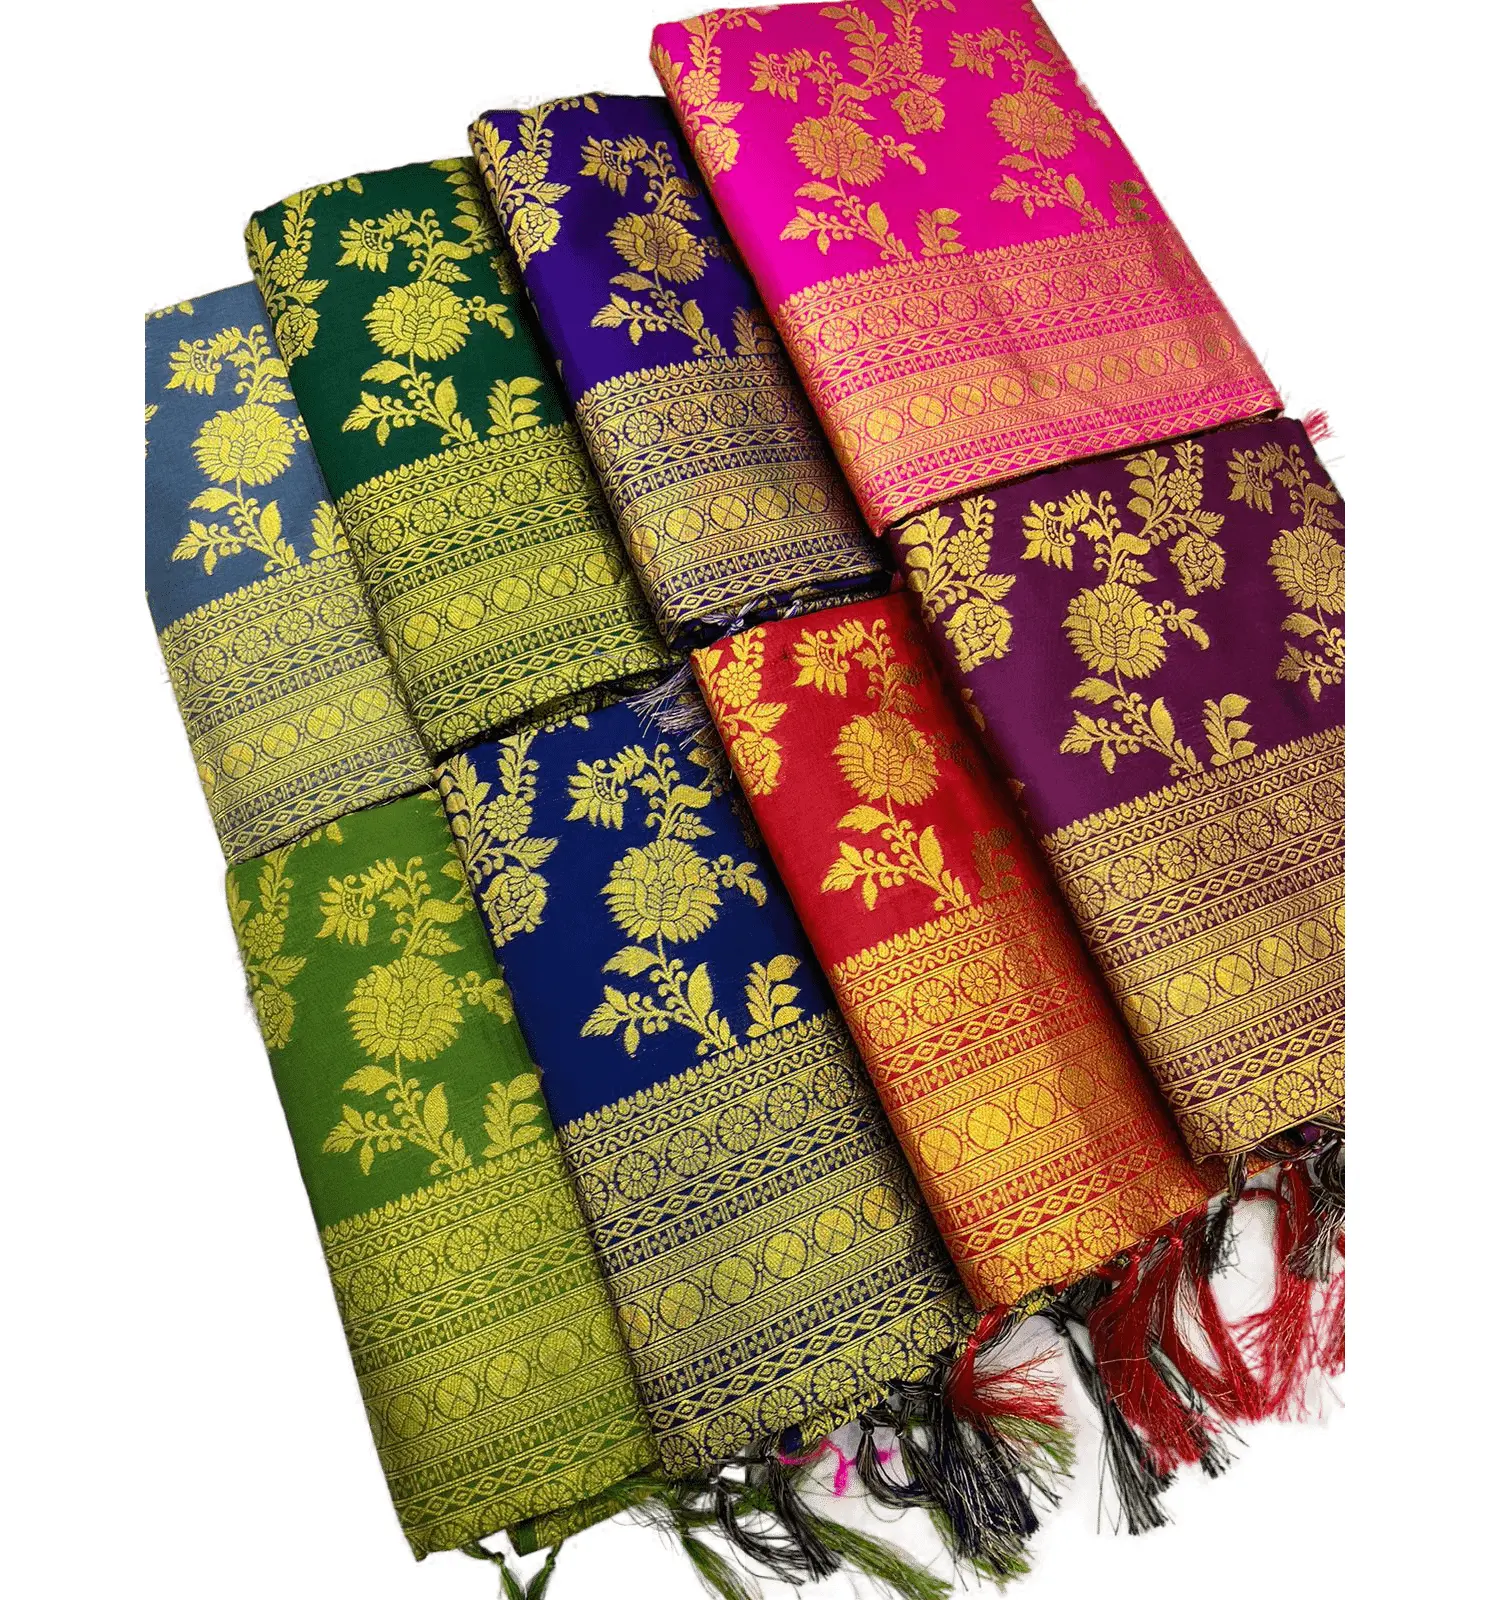 Saree de seda puro do sul indiano, com ouro puro saree de tecelagem, trabalho com blusa de brocada